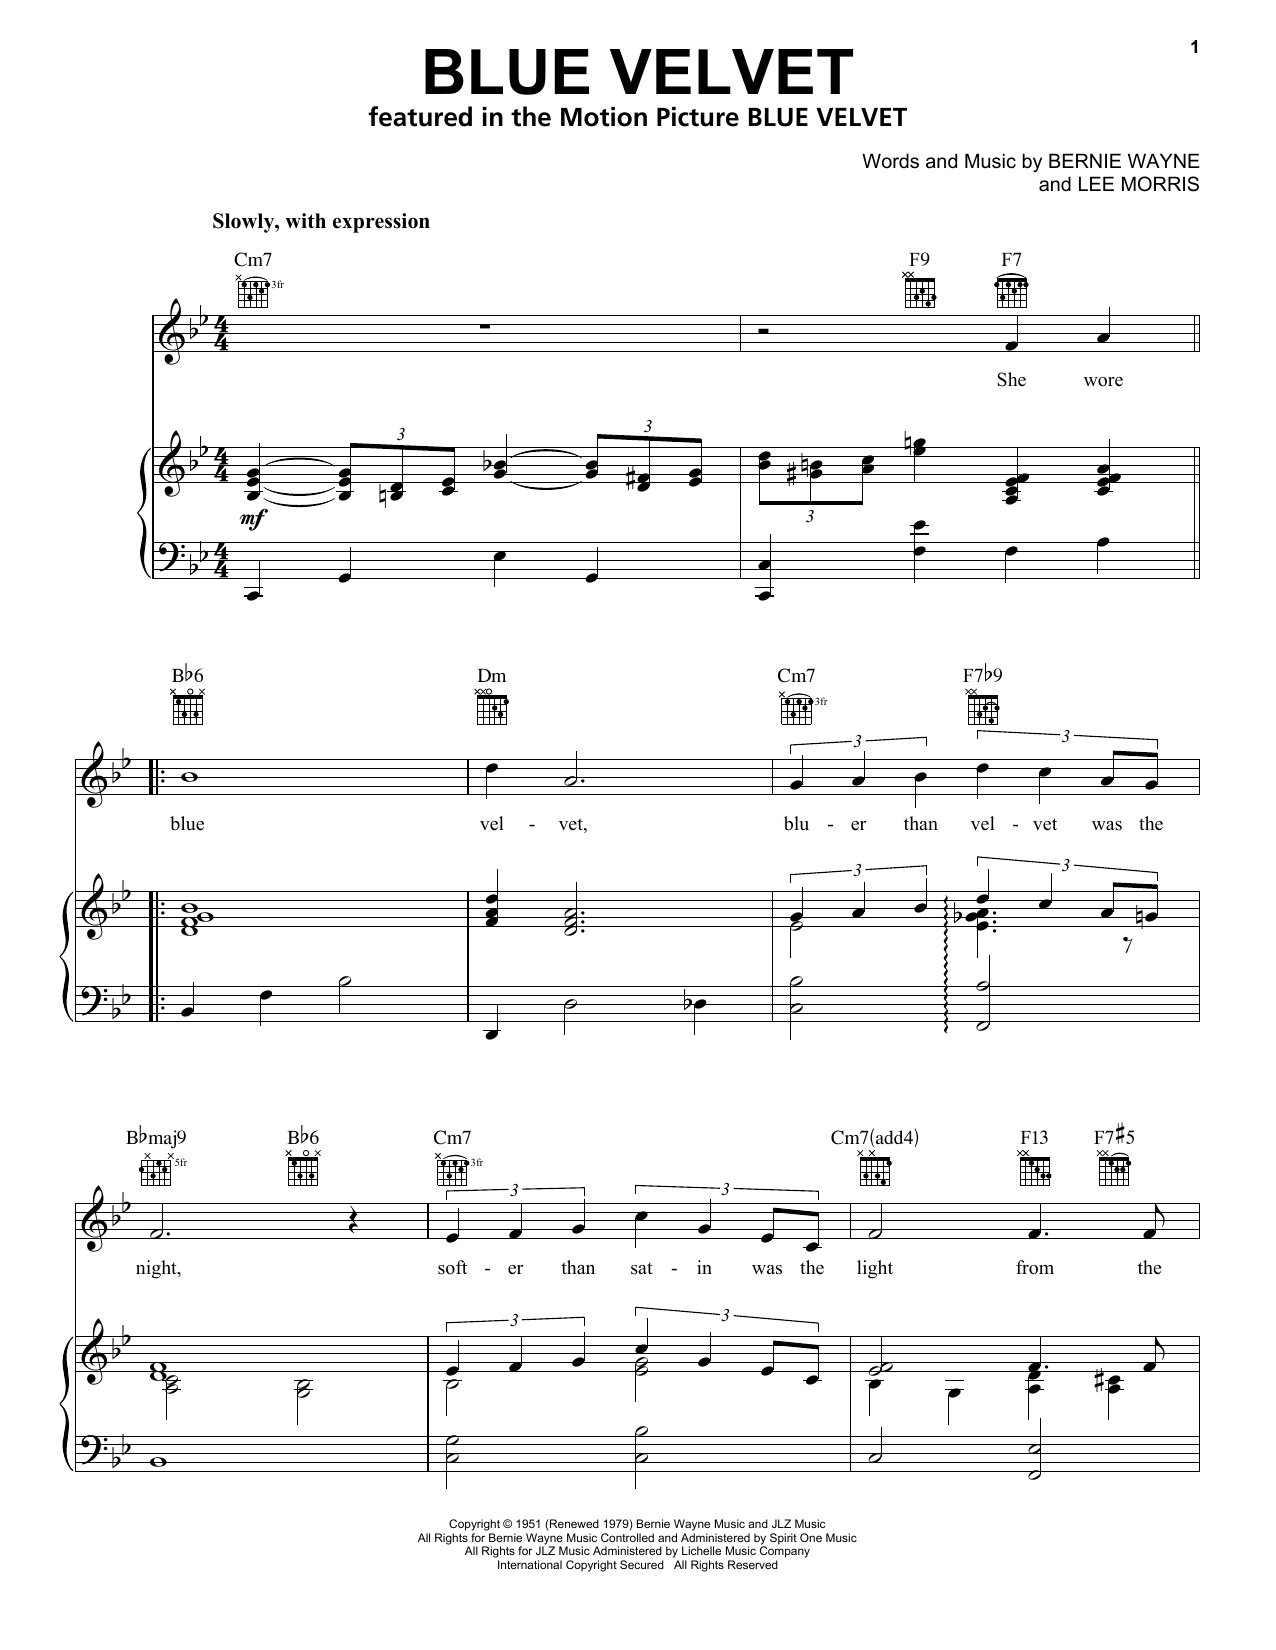 Bobby Vinton Blue Velvet Sheet Music Notes & Chords for Ukulele - Download or Print PDF